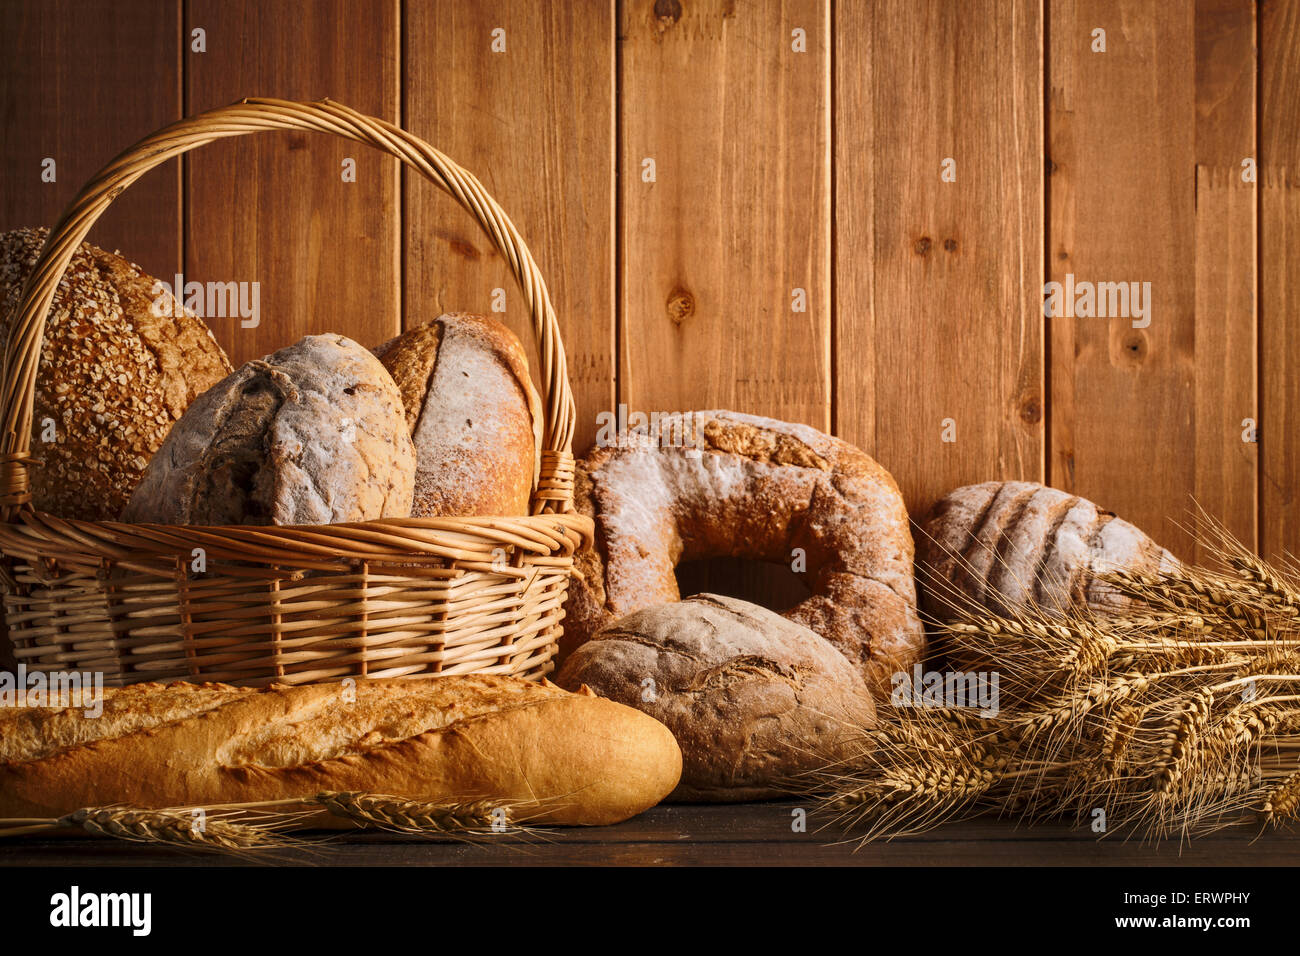 Pan fresco y el trigo en la madera Foto de stock